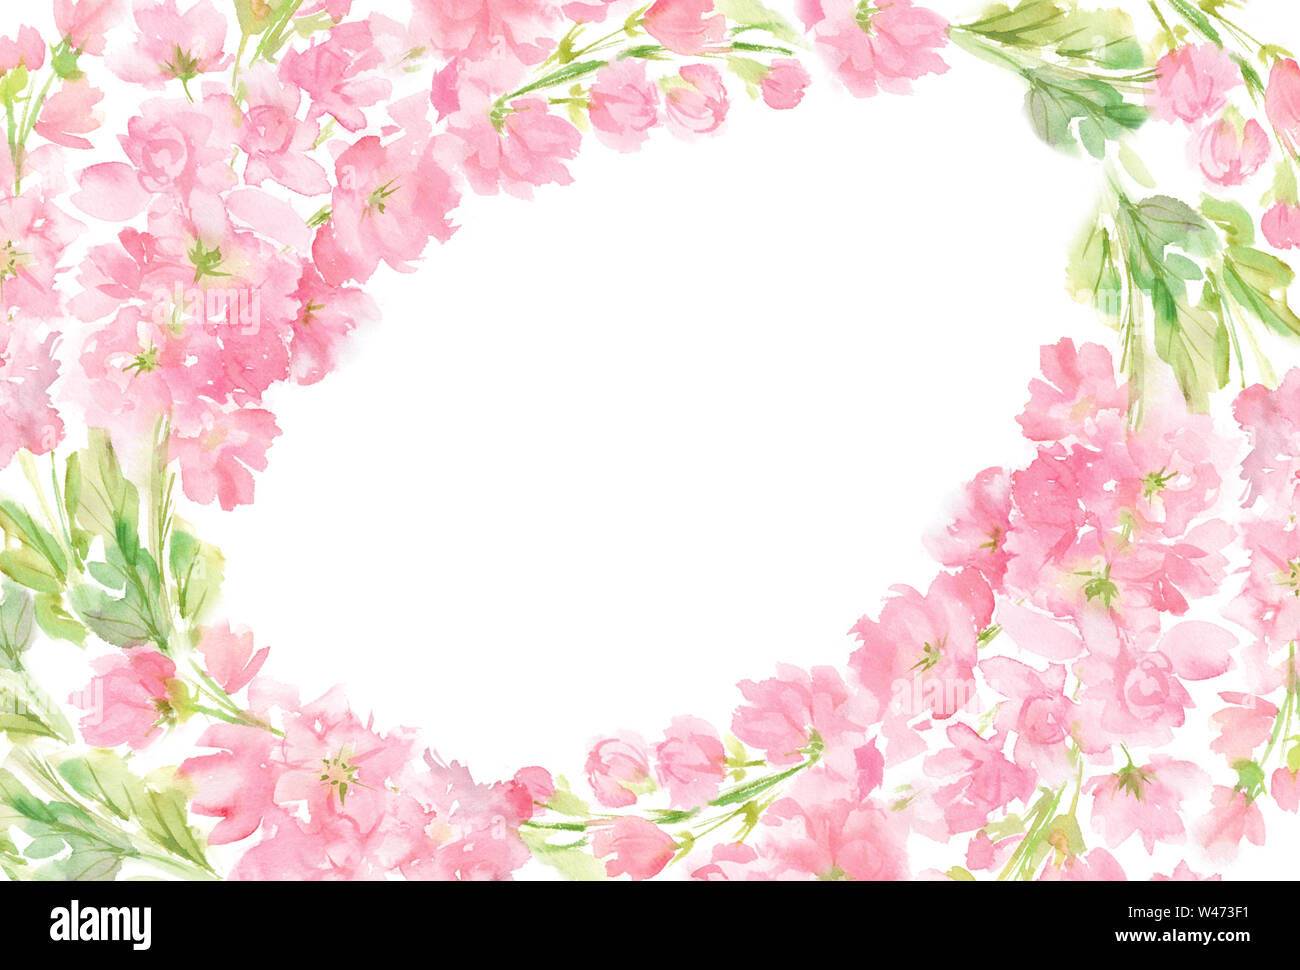 Rosa floreale astratta acquerello ovale telaio orizzontale corona disposizione color pastello fiori e foglie dipinte a mano in background cerchio per il testo Foto Stock